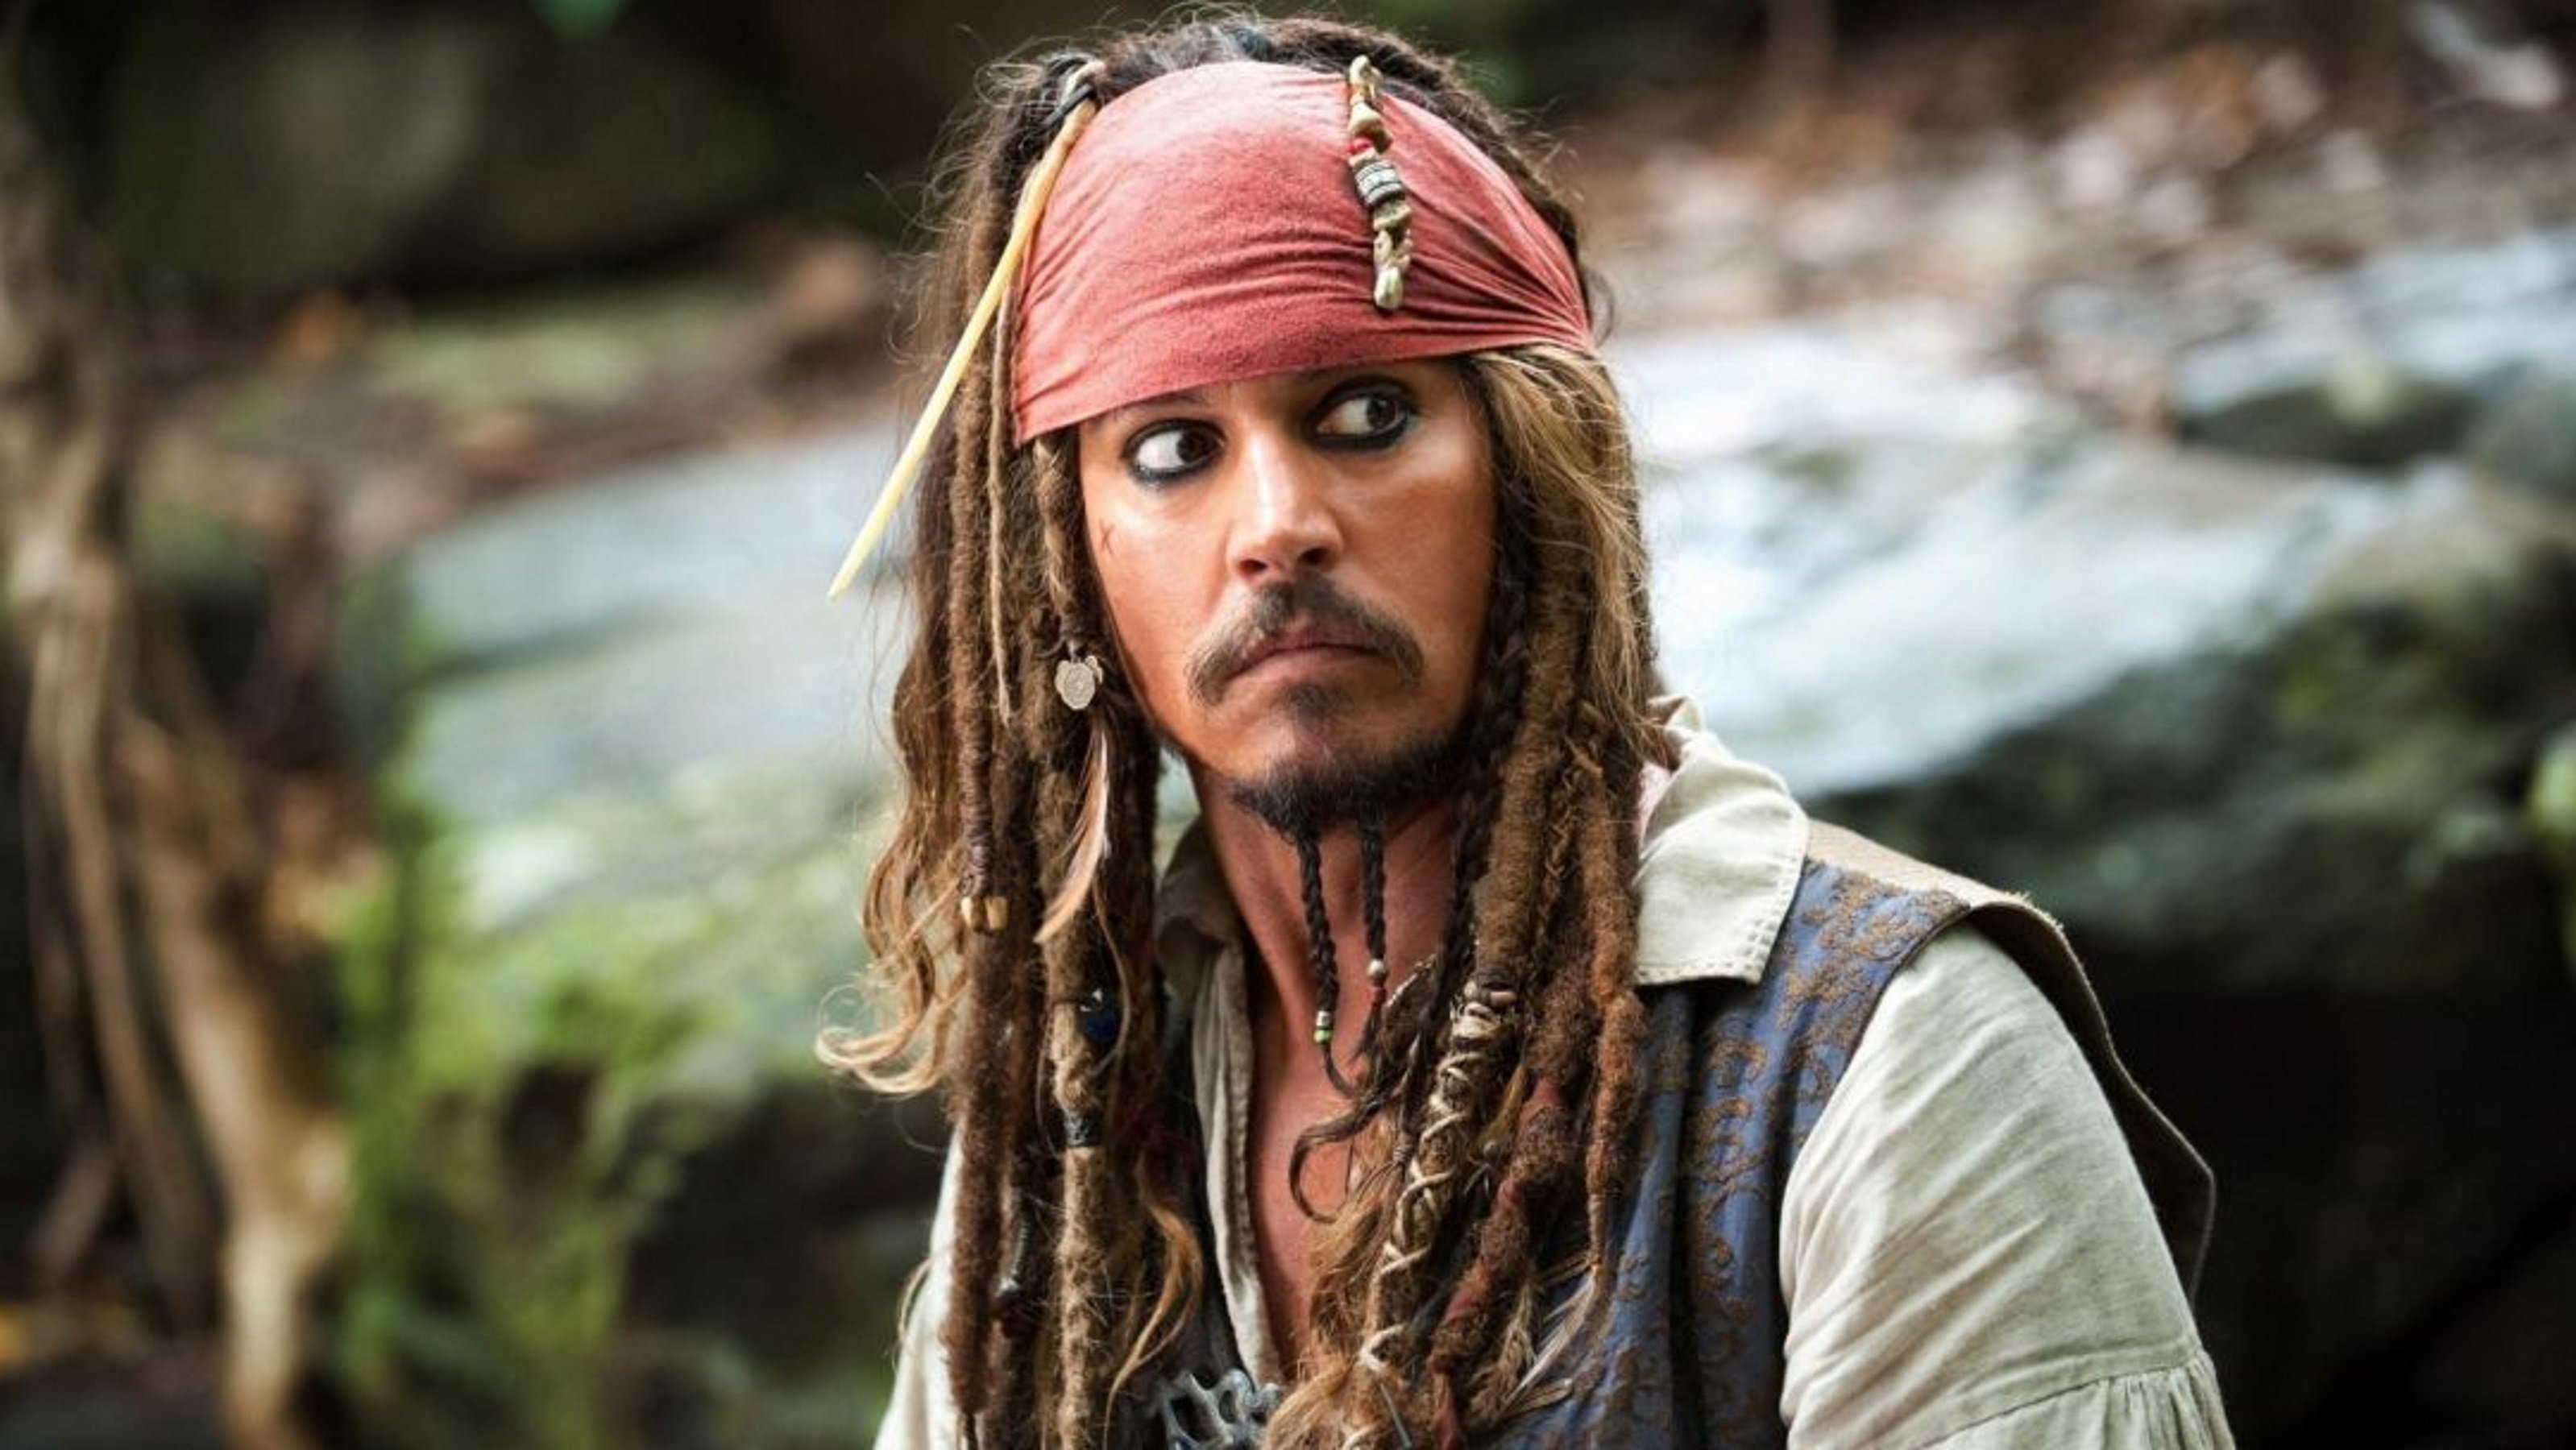 Disney sustituye Johnny Depp y prepara un nuevo look para Jack Sparrow en 'Piratas del Caribe'